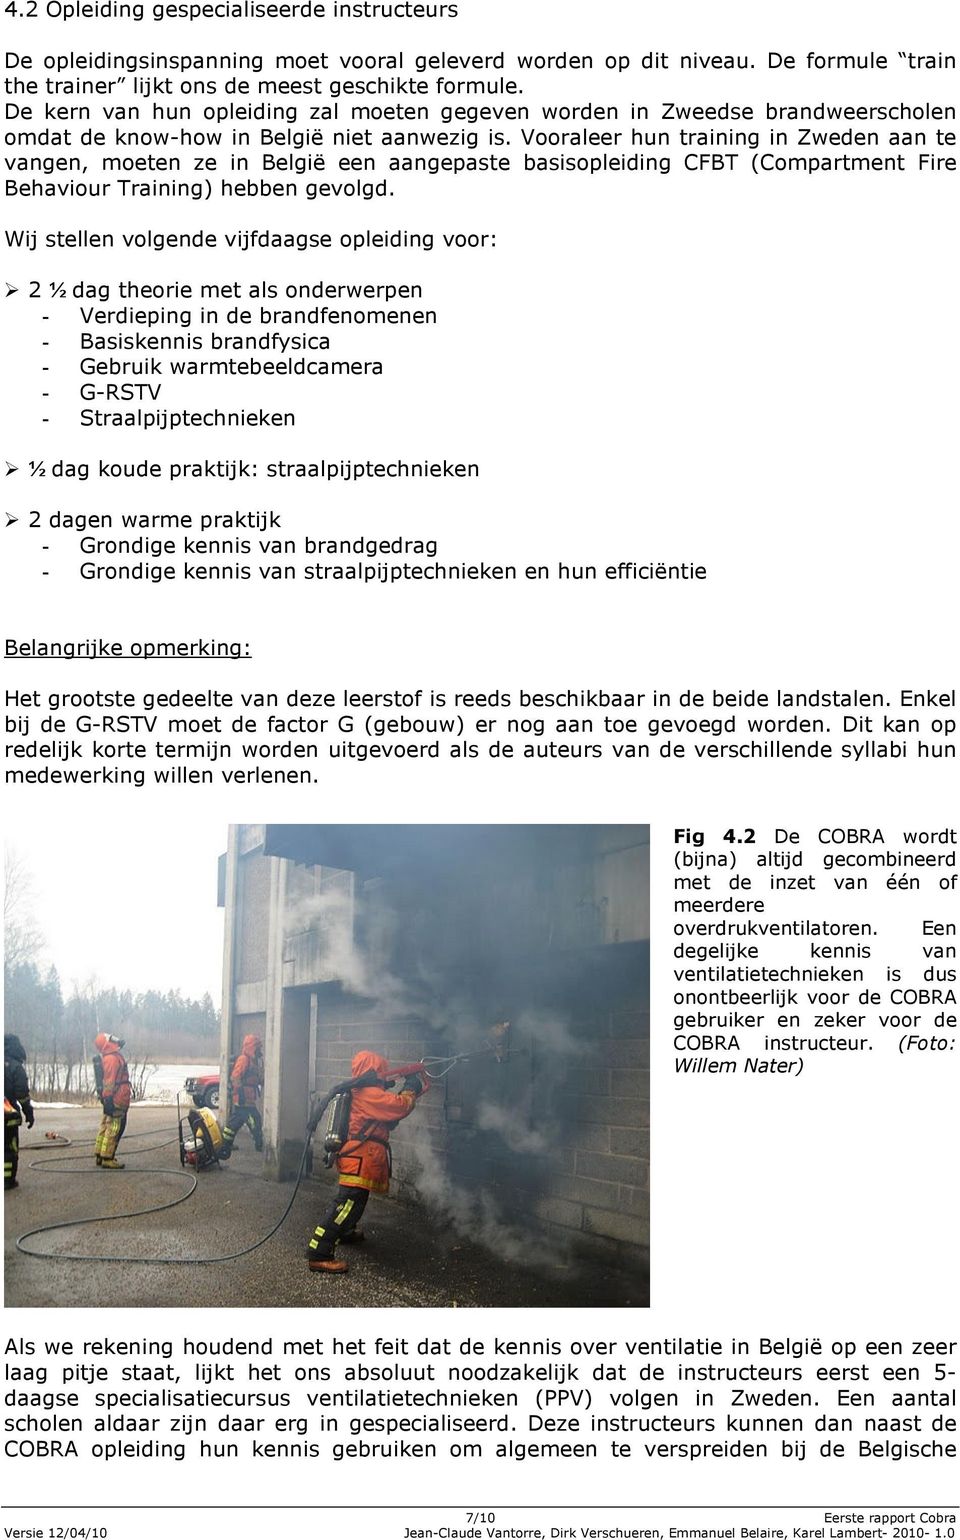 Vooraleer hun training in Zweden aan te vangen, moeten ze in België een aangepaste basisopleiding CFBT (Compartment Fire Behaviour Training) hebben gevolgd.